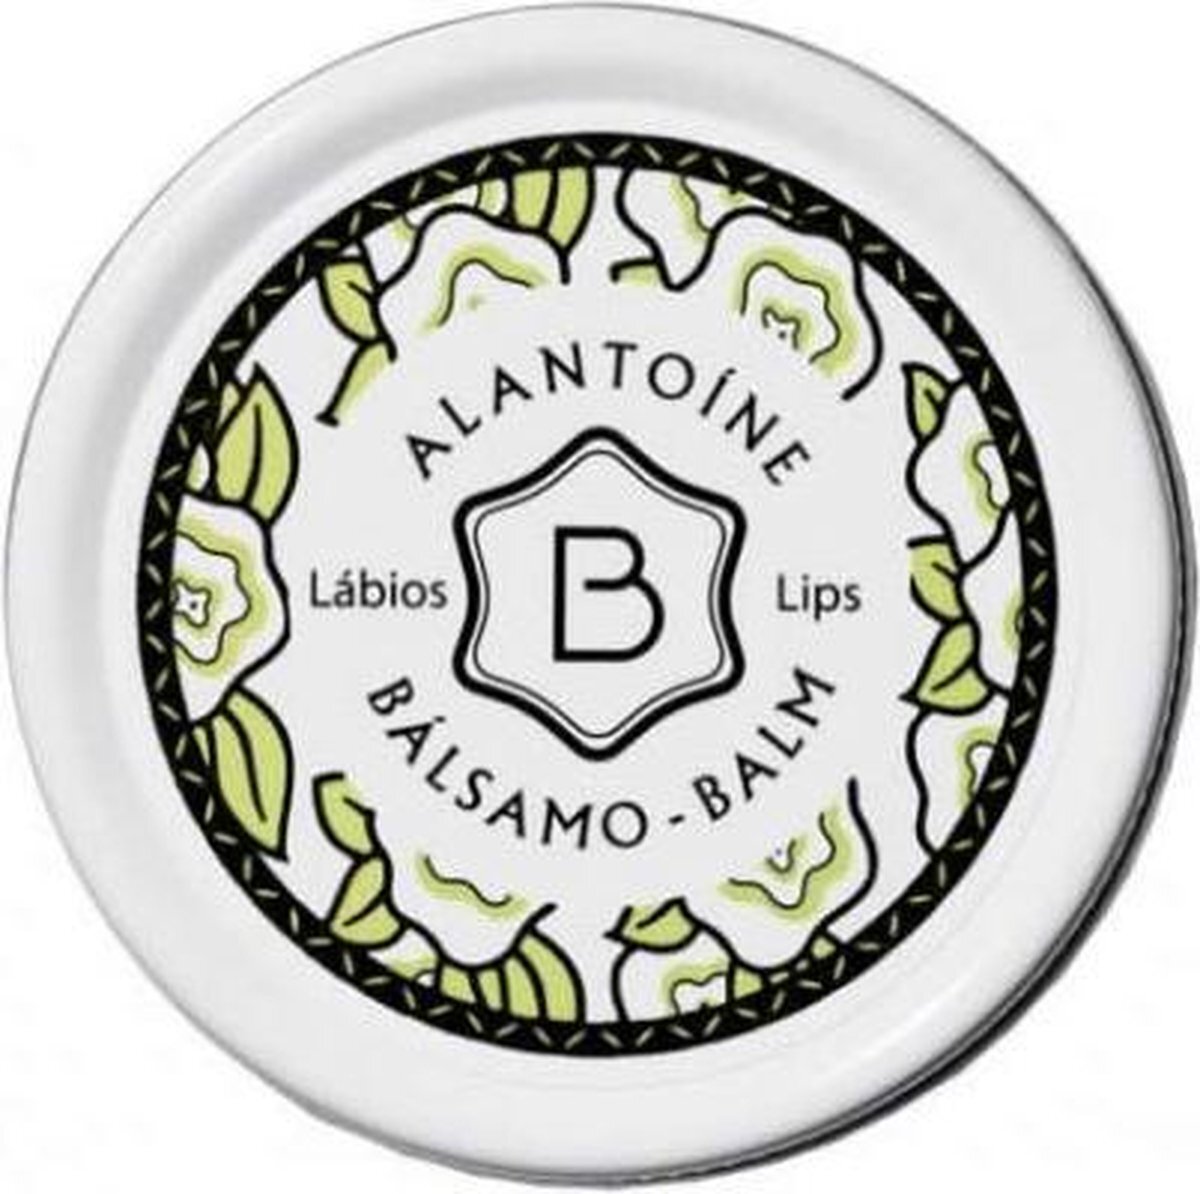 BENAMAR Benamor Alantoine Lip Balm 12ml